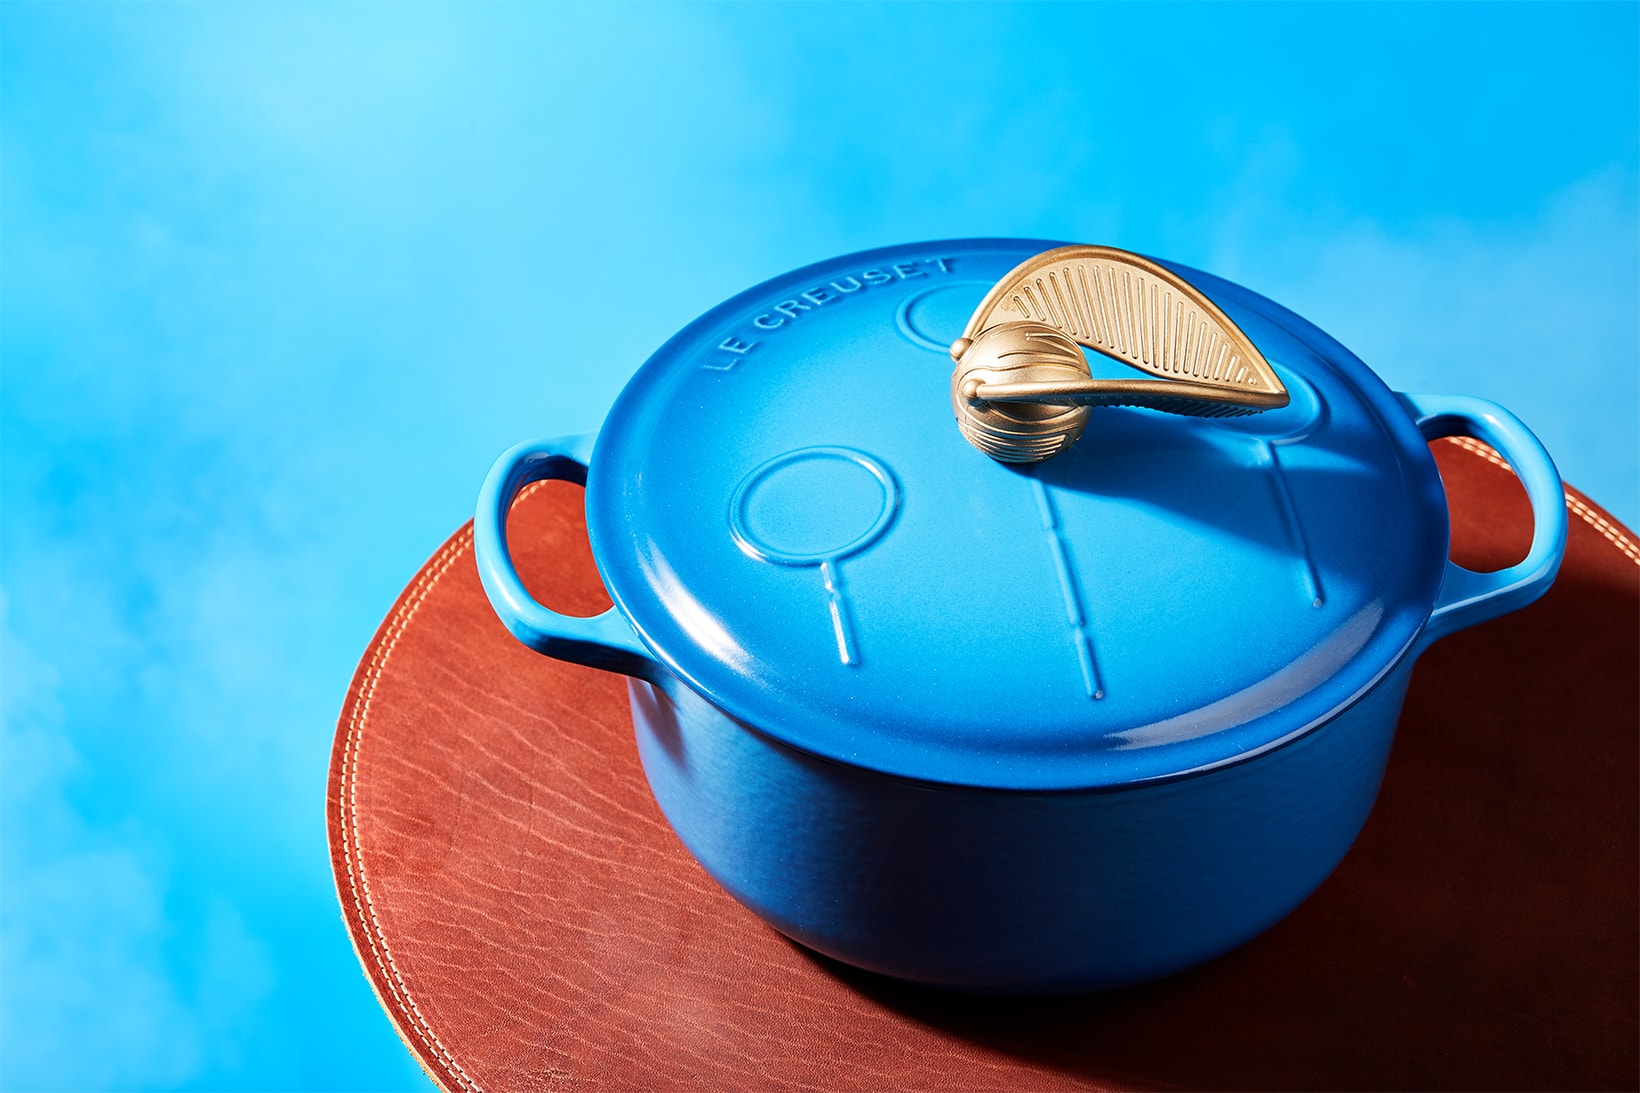 Le Creuset Harry Potter Kitchenware Collaboration Collection dutch oven pot blue